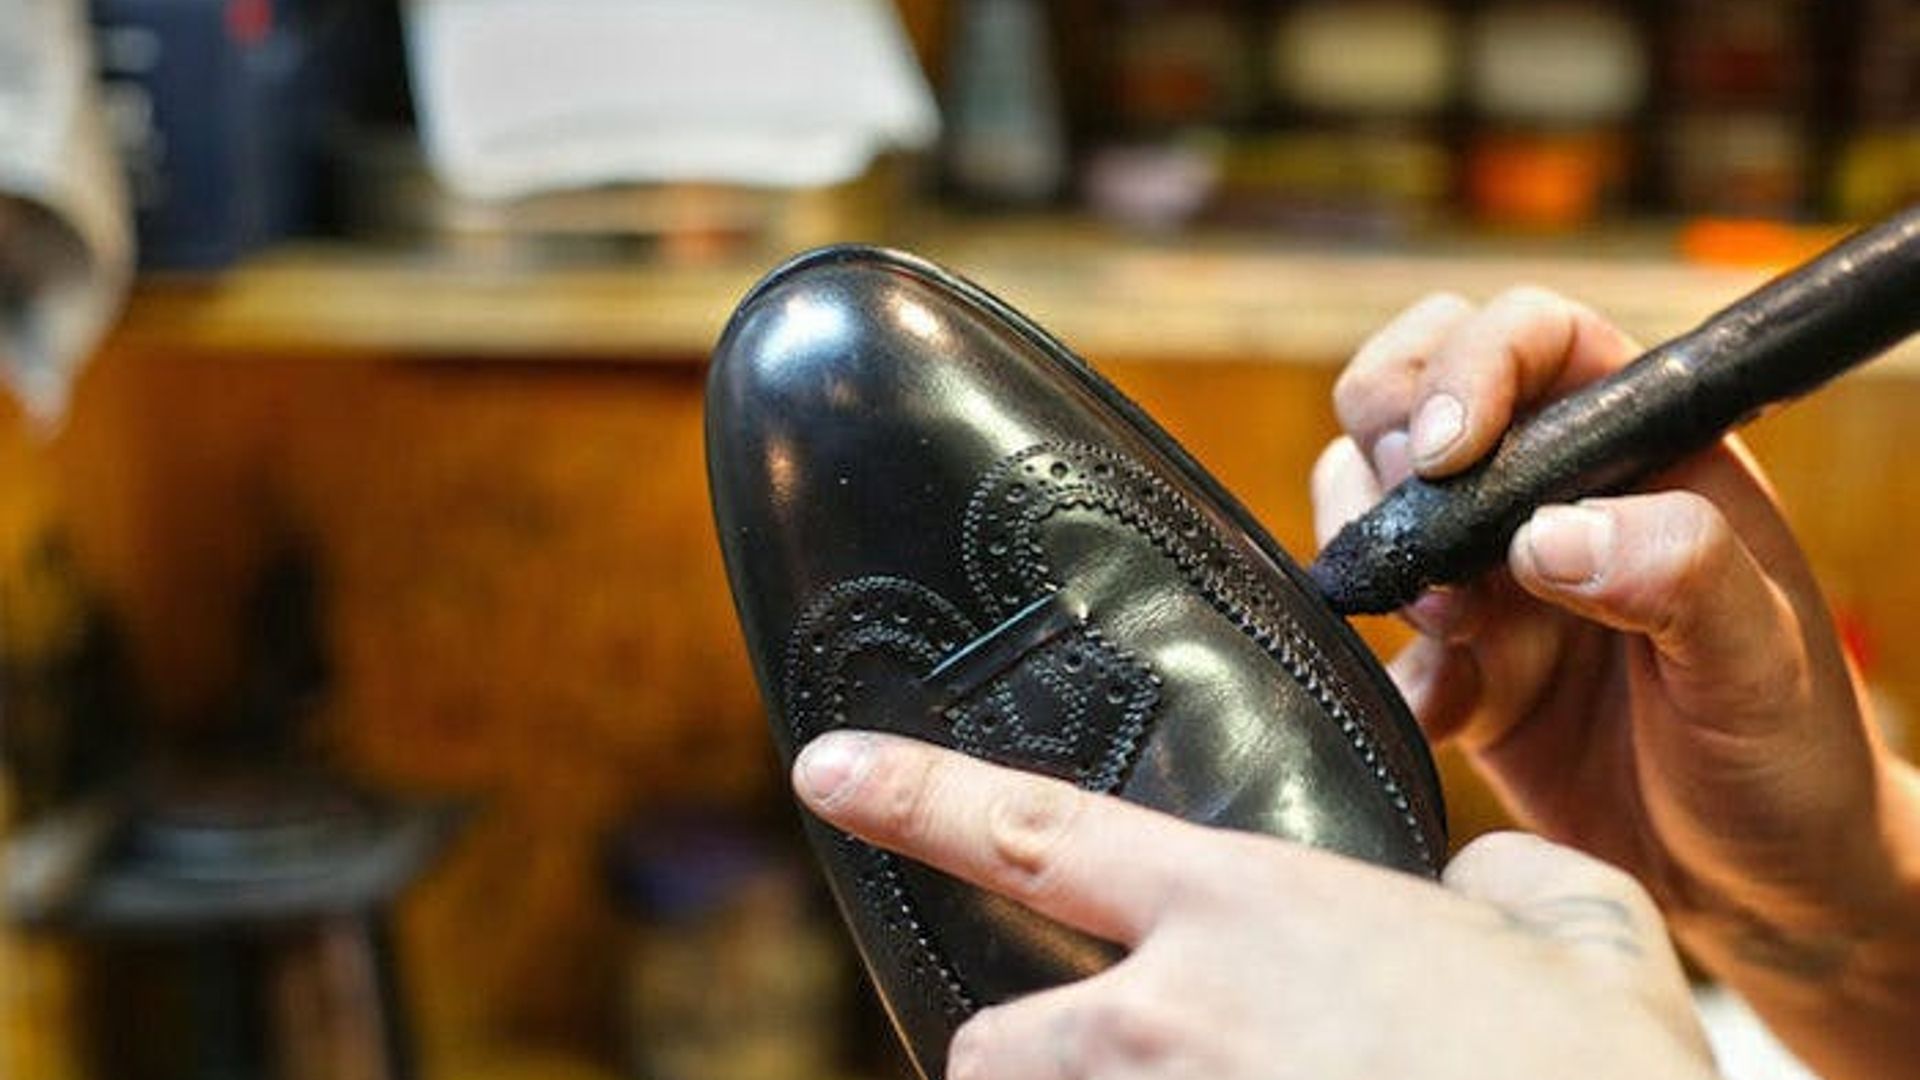 Réparation de semelles de chaussures en caoutchouc pour chaussures